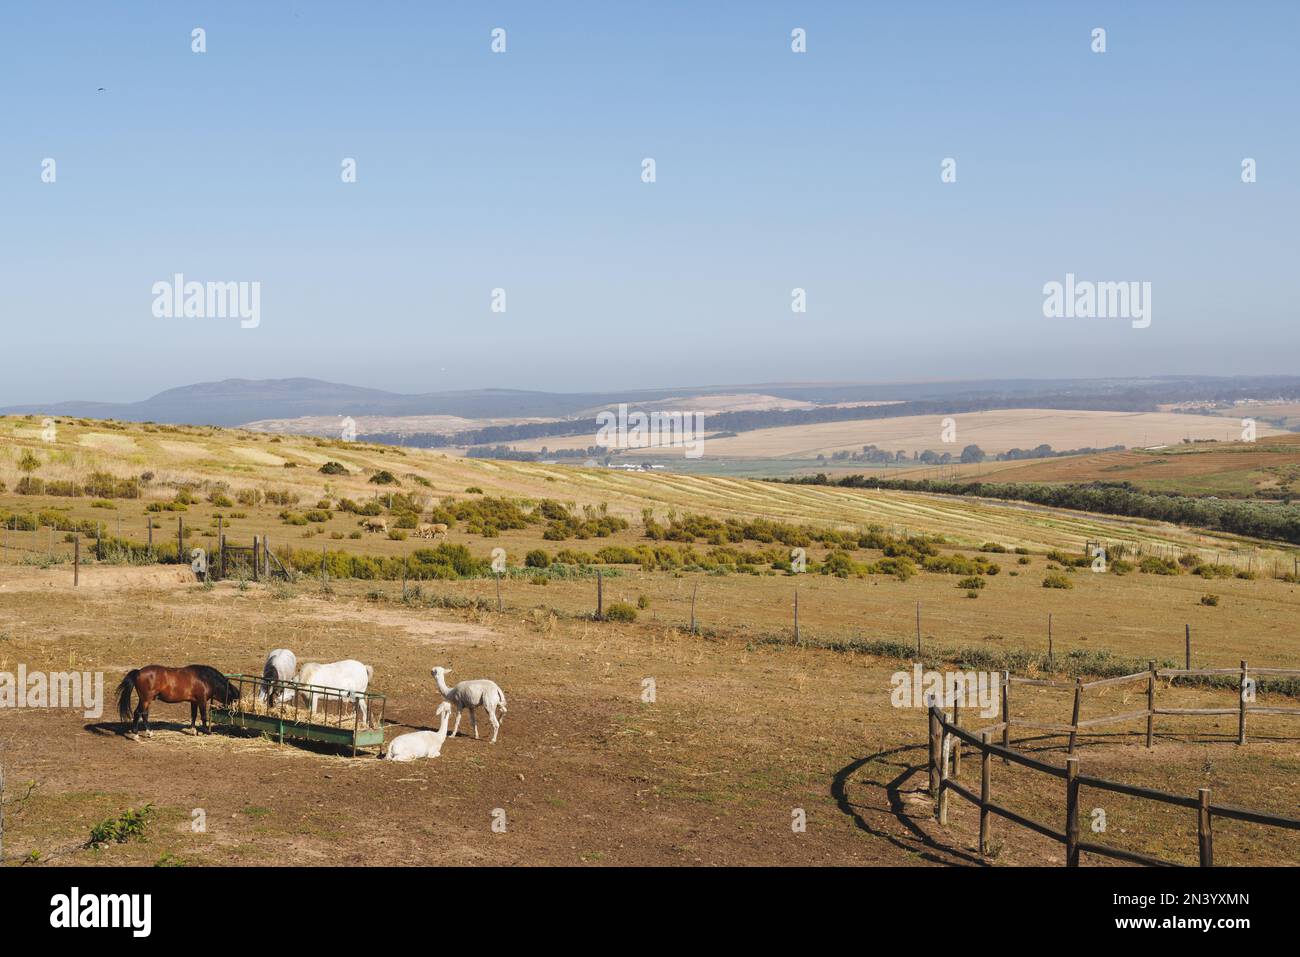 Vue panoramique sur les lamas et les chevaux qui paissent sur une montagne herbeuse et le ciel bleu clair par beau temps Banque D'Images